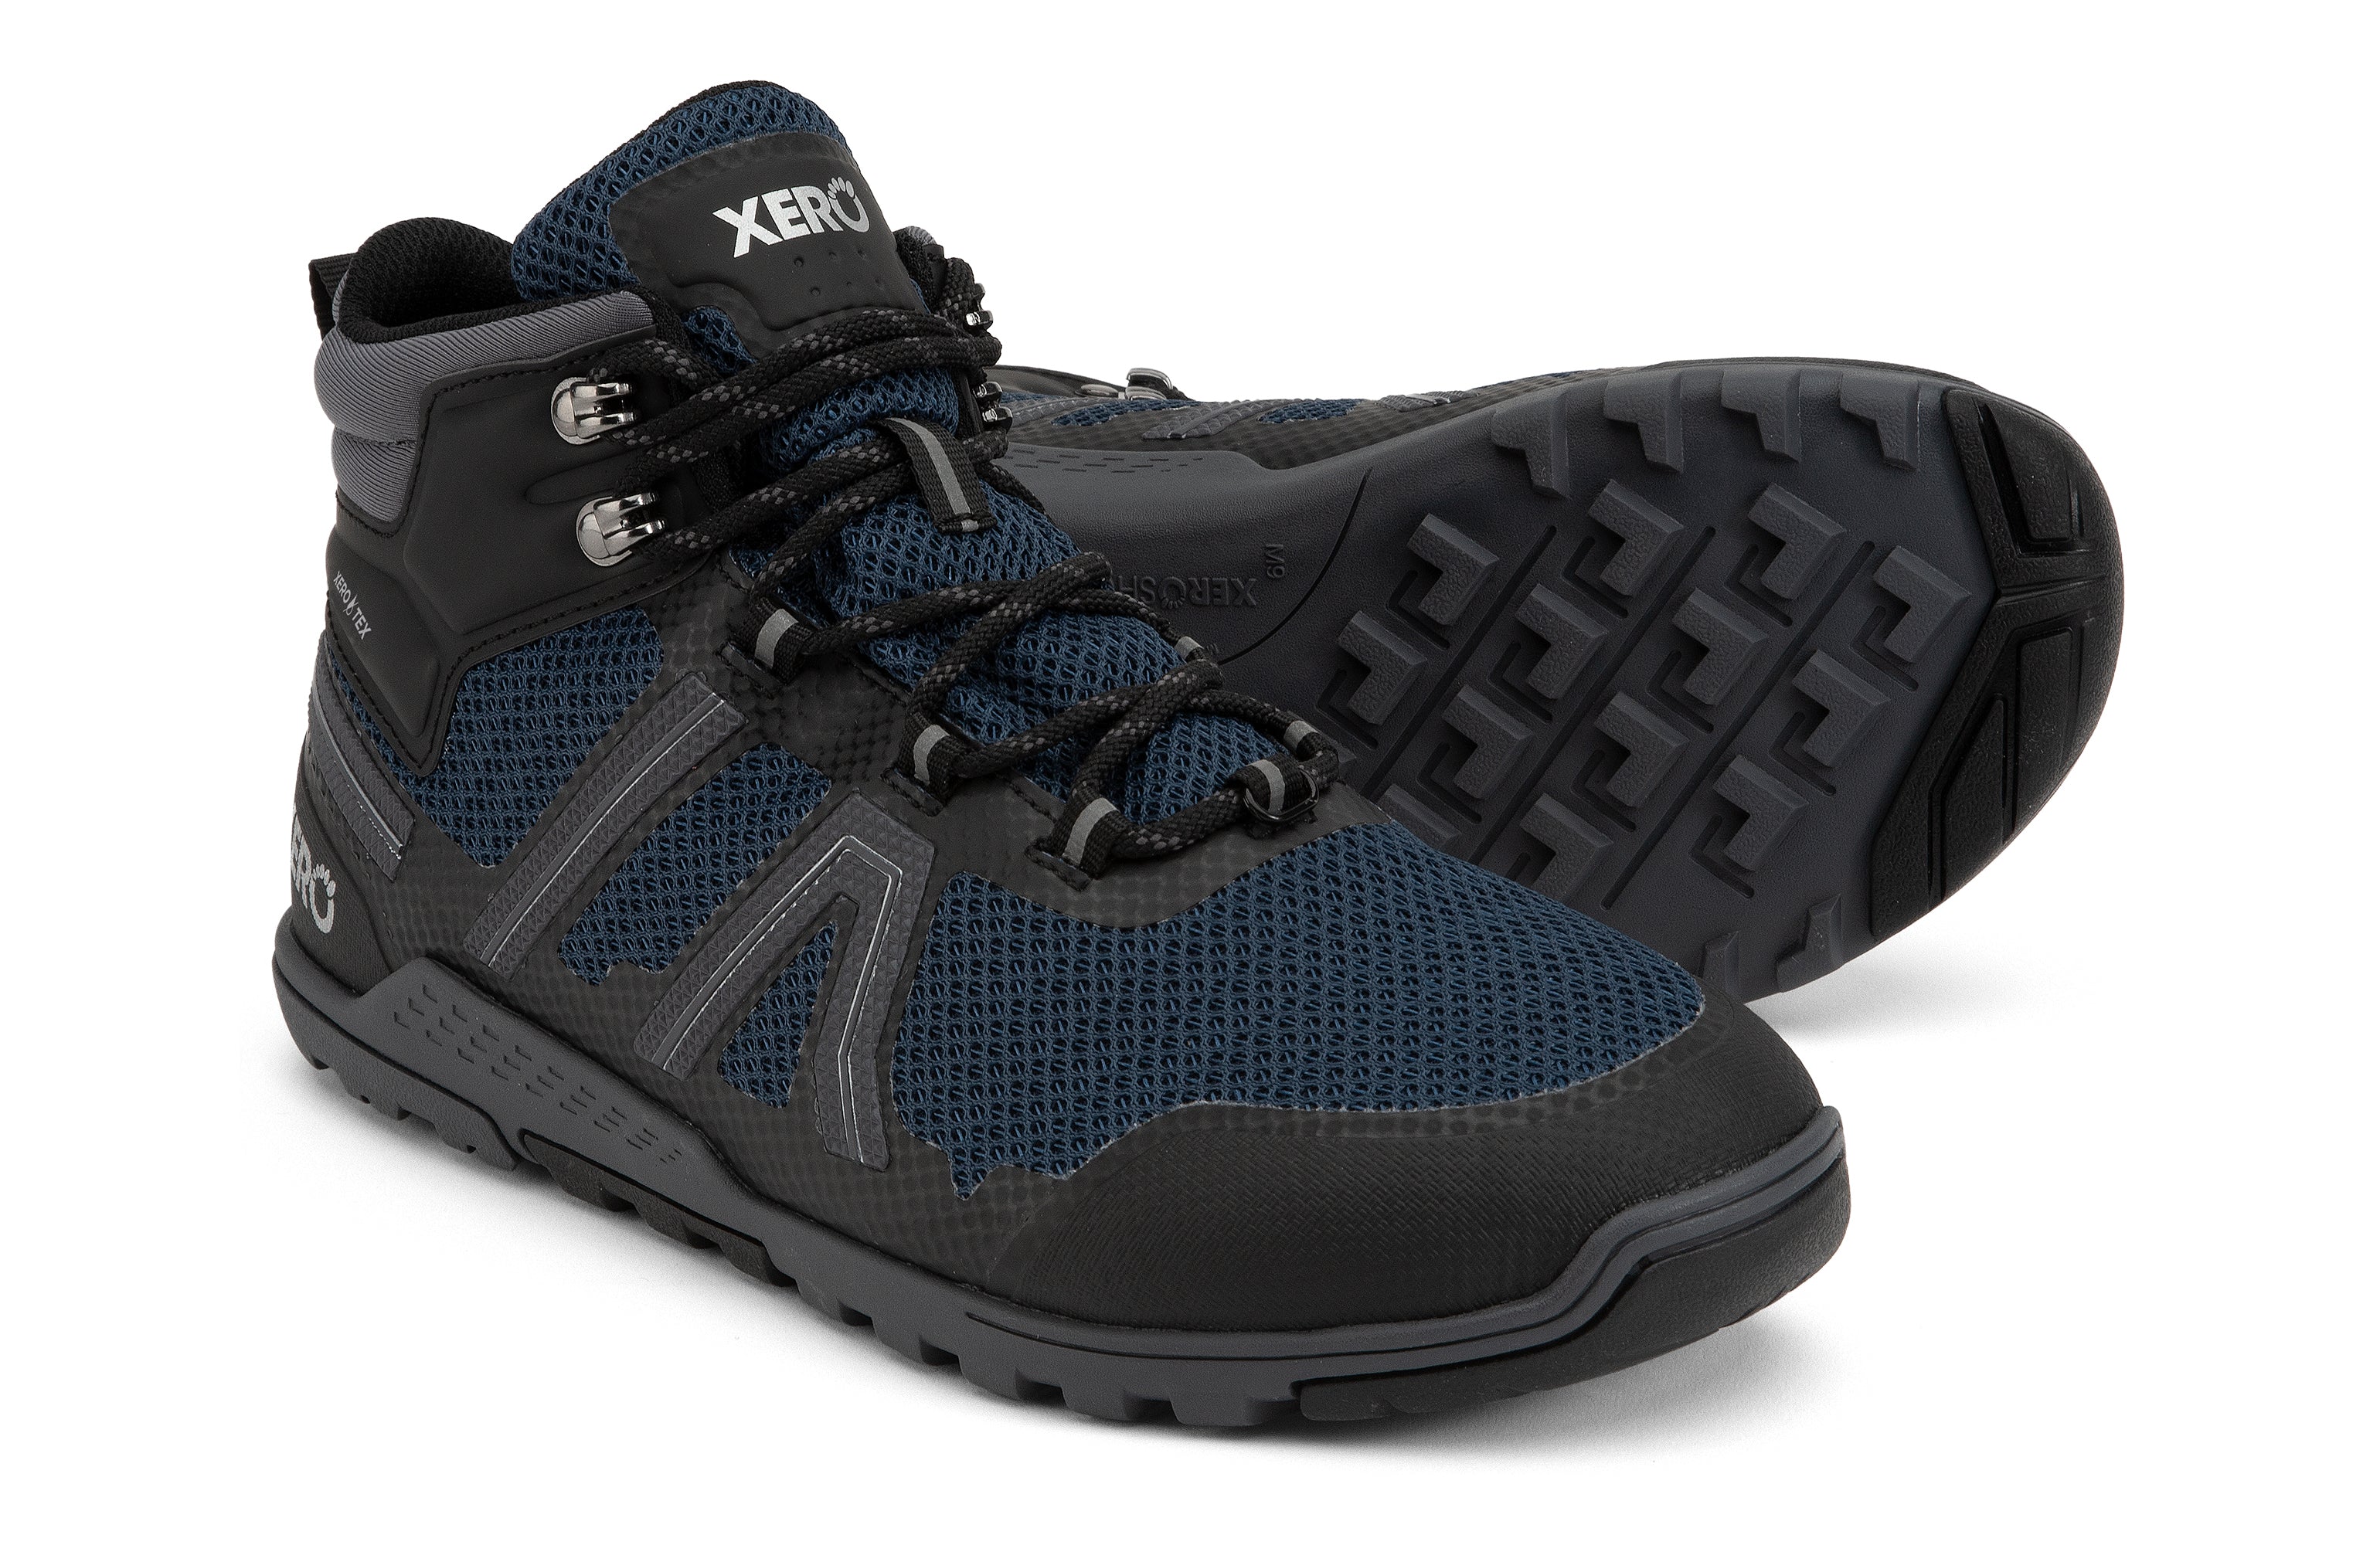 Xero Shoes Xcursion Fusion barfods støvler til mænd i farven moonlit blue / black, par